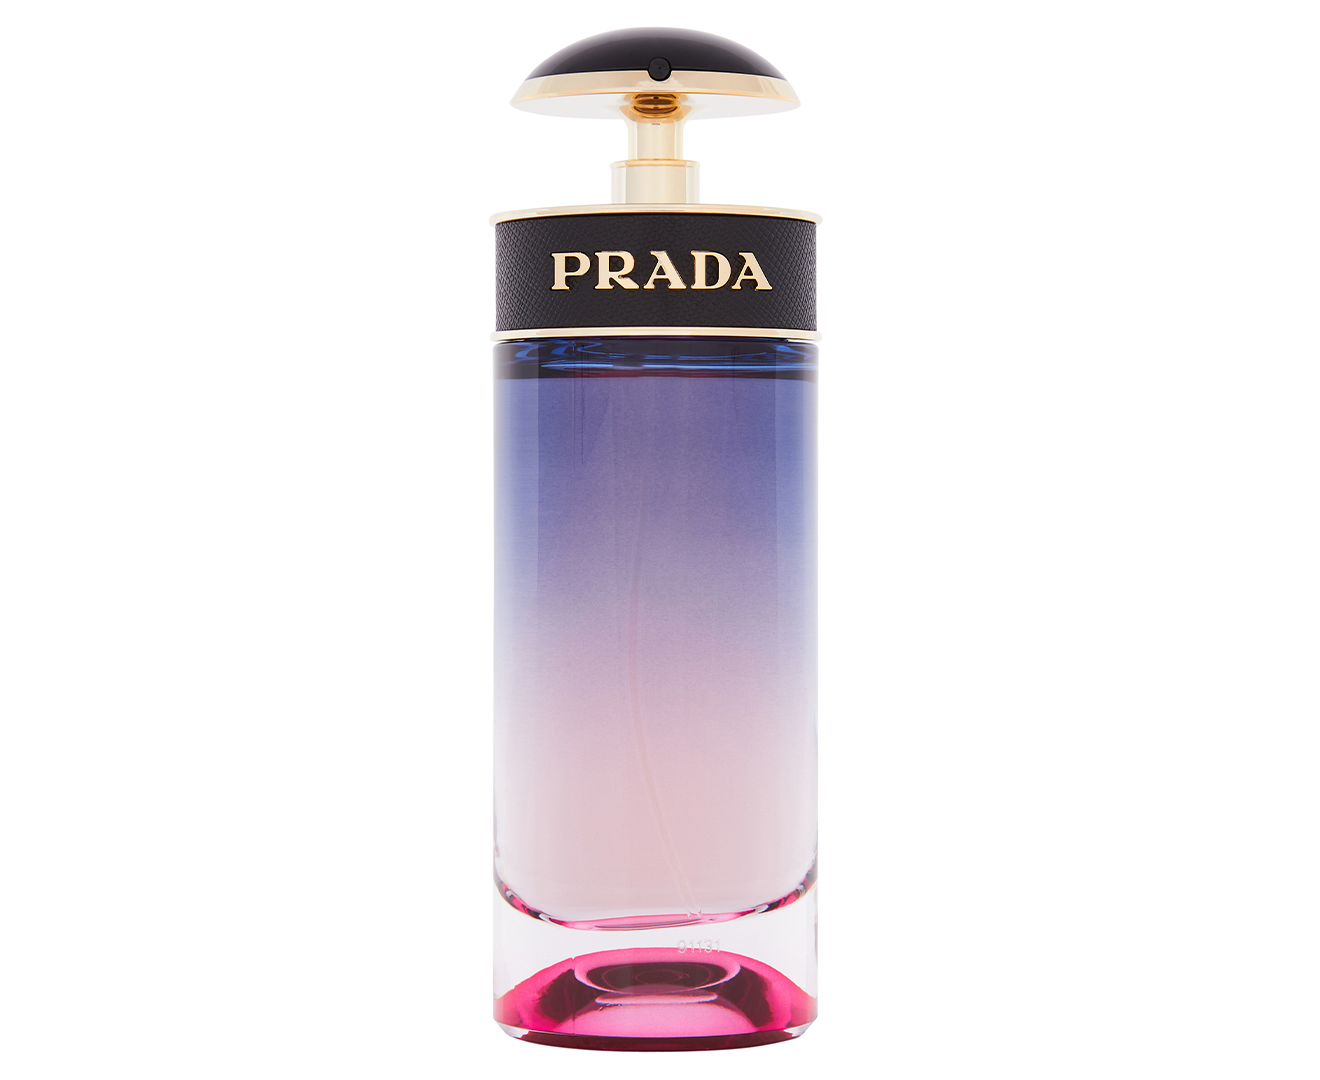 Prada Candy Night For Women EDP Perfume 80mL | Catch.com.au